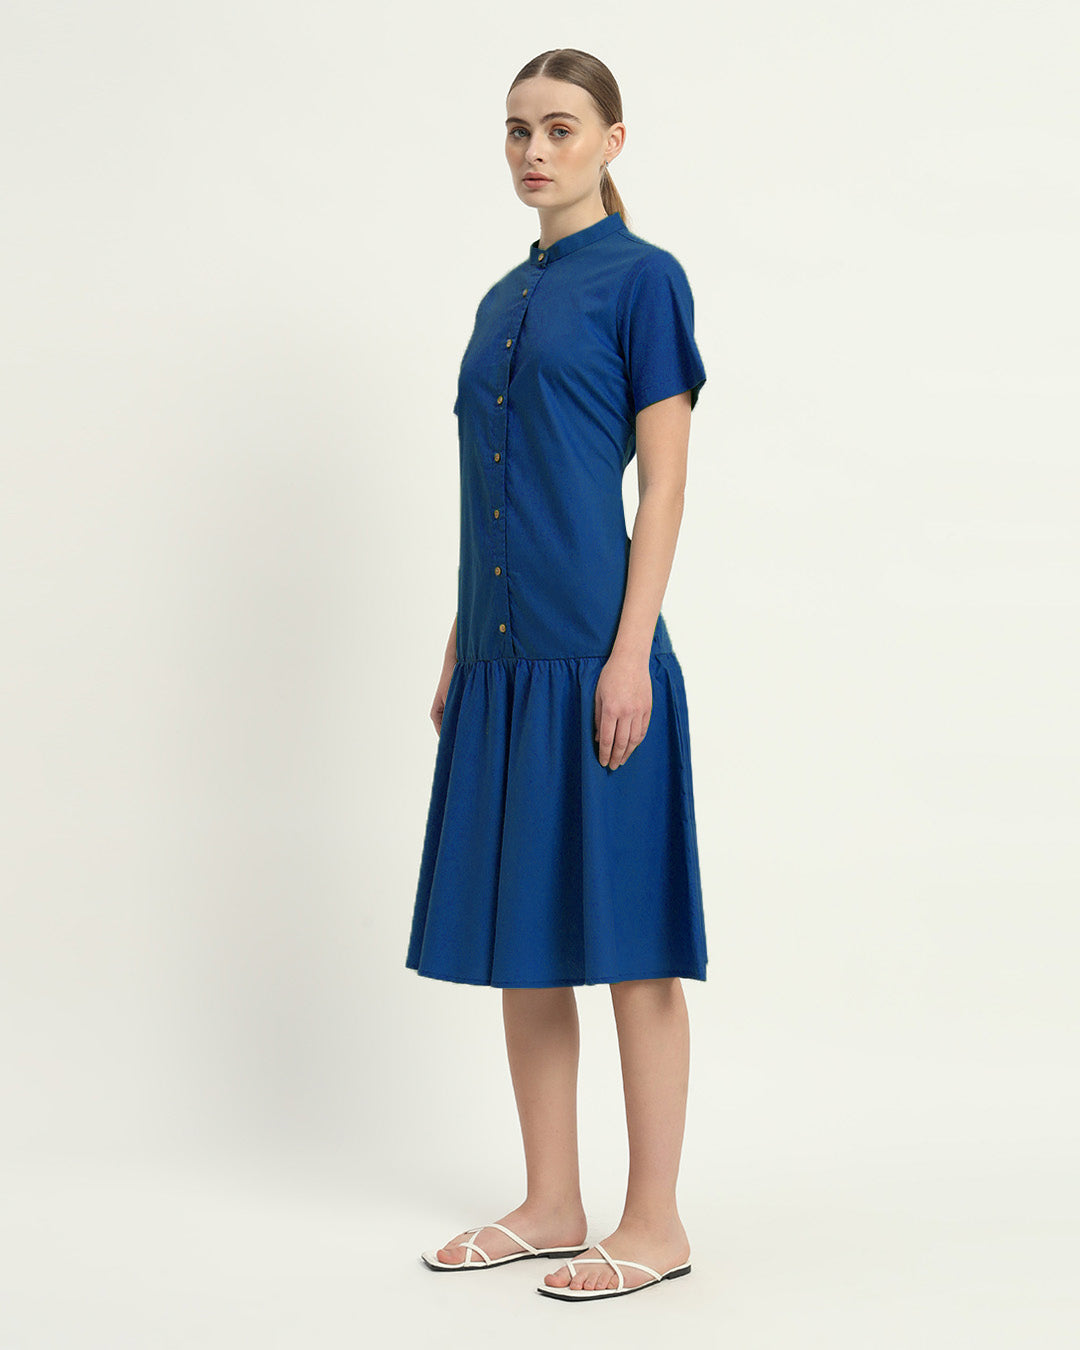 The Cobalt Melrose Cotton Dress